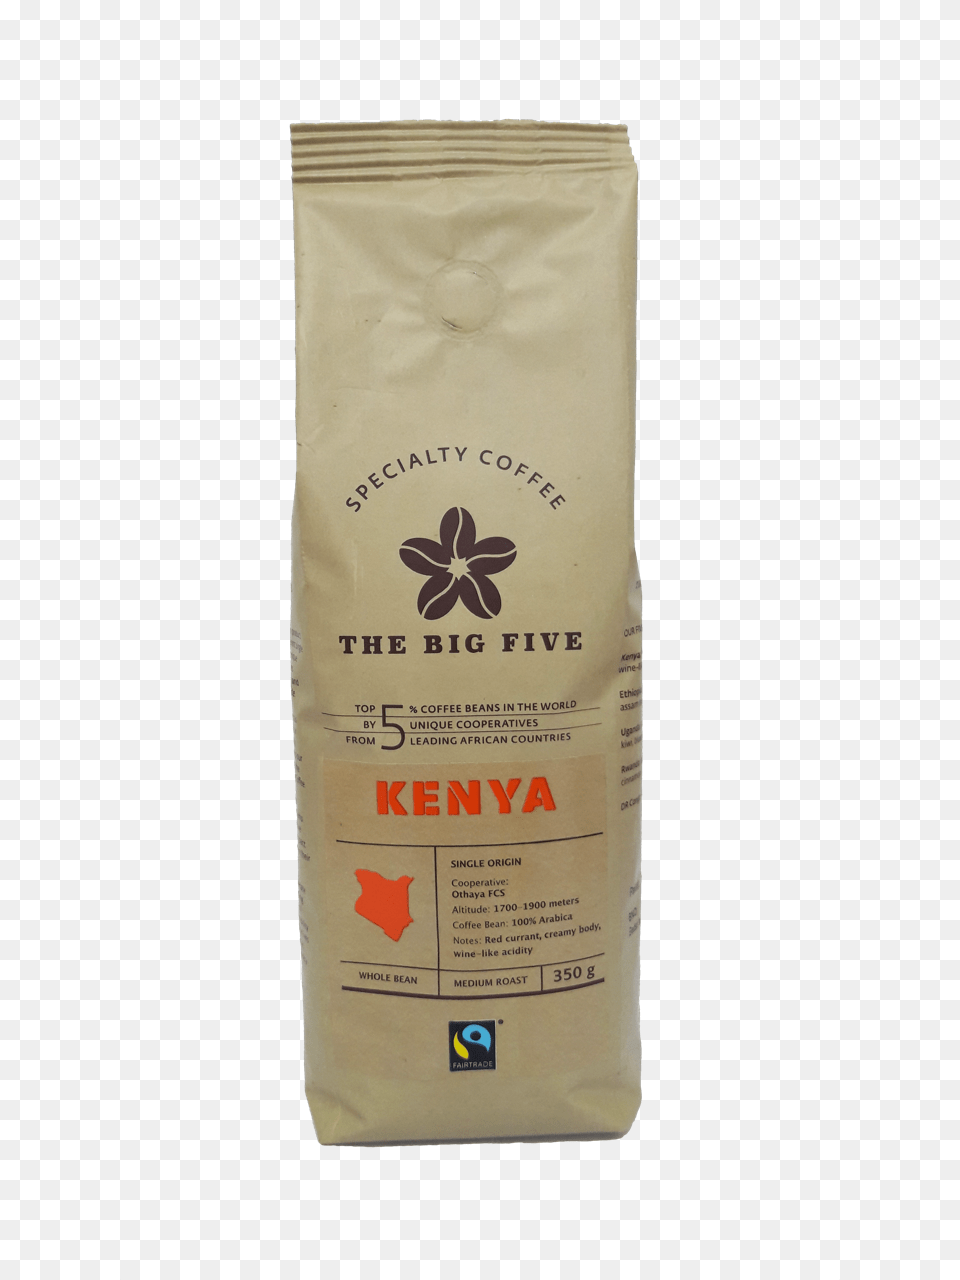 Kenyan Coffee Paper Bag, Powder, Flour, Food Free Transparent Png